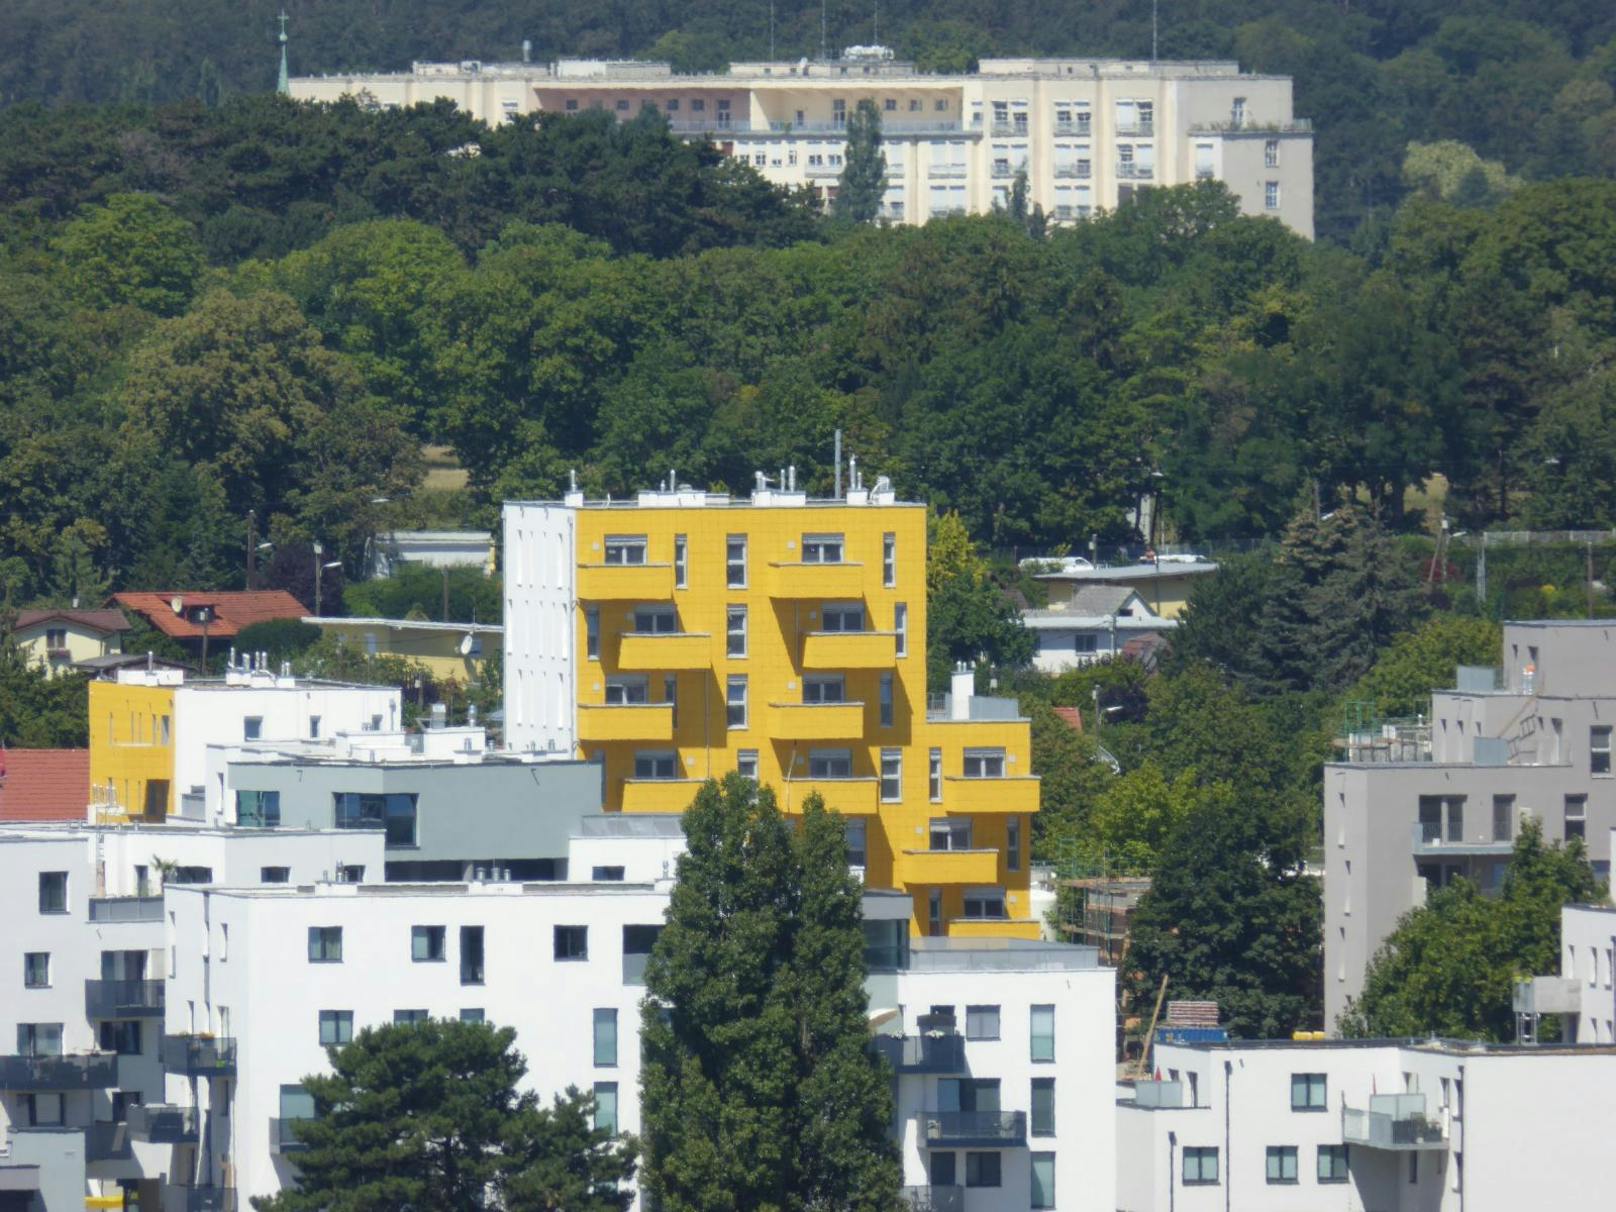 Welche Zahl erkennst du auf dem gelben Gebäude?